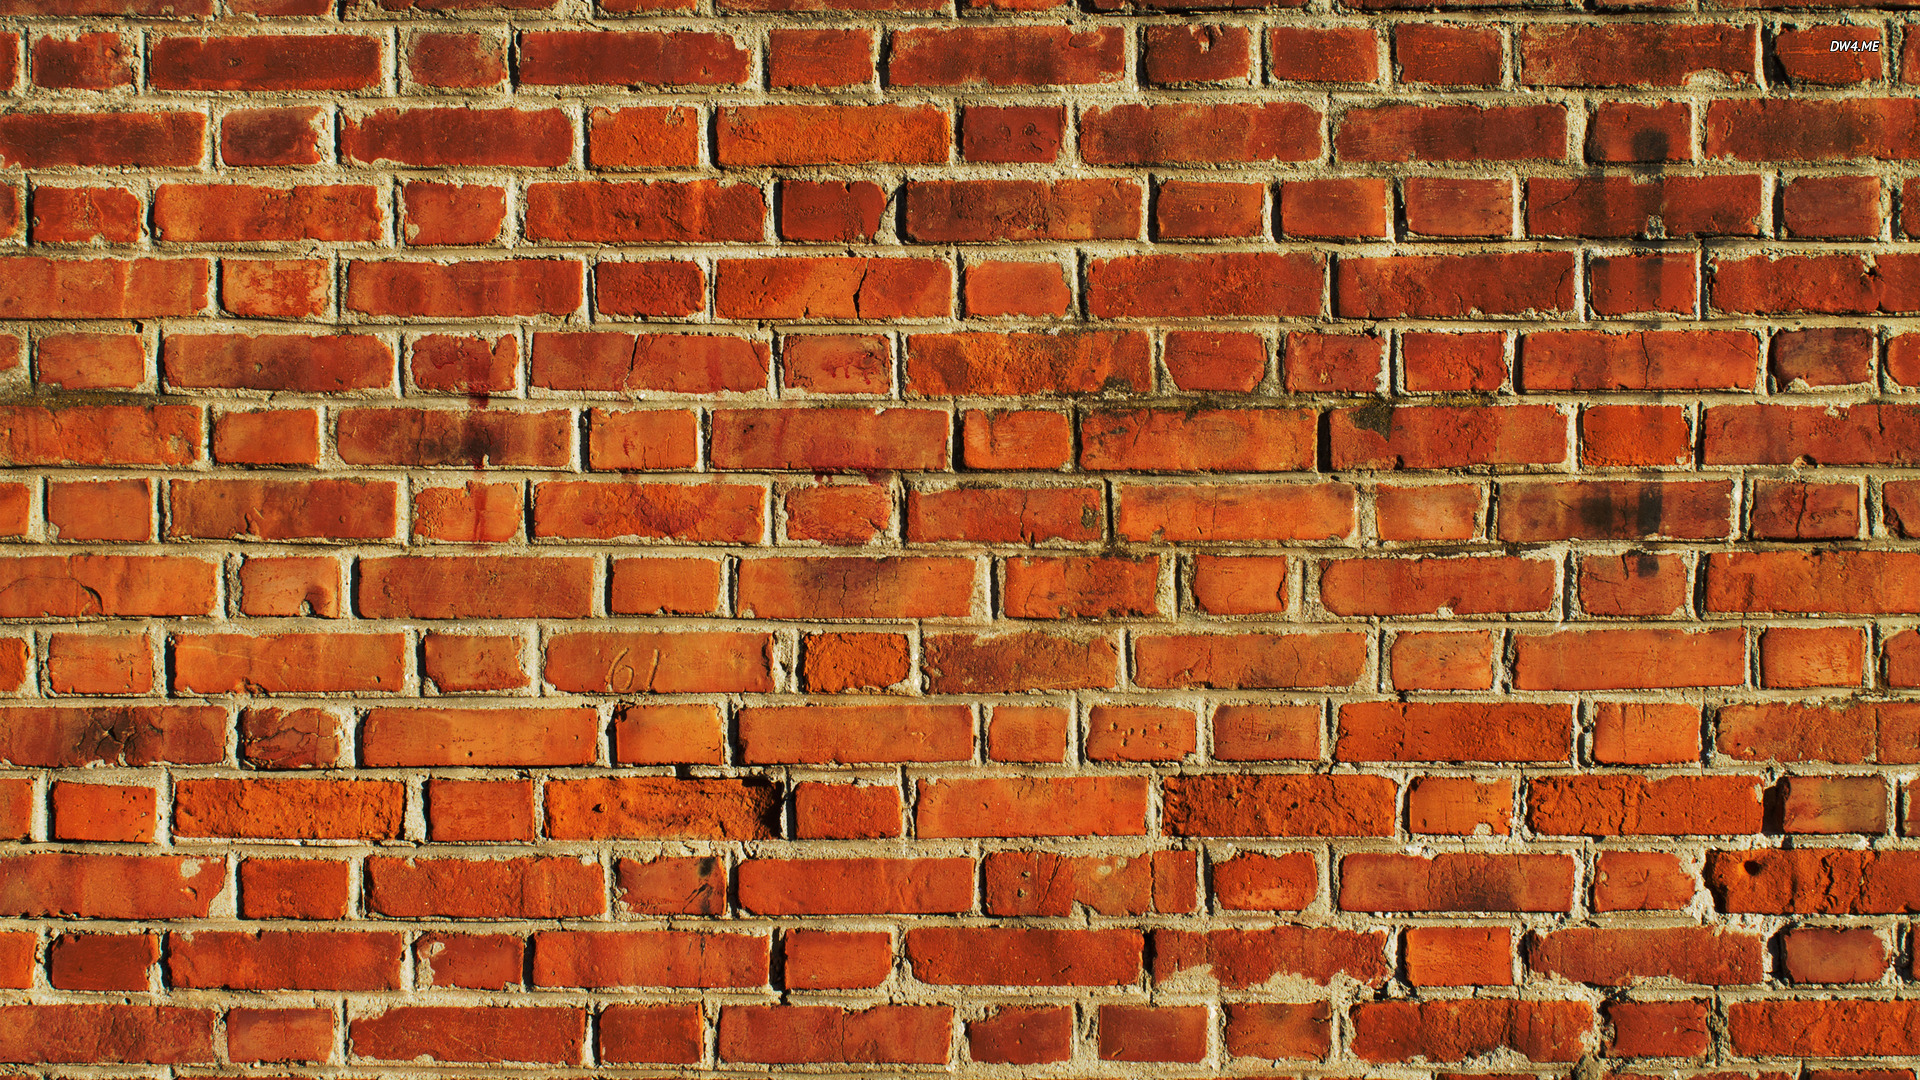 brick wall wallpaper,brickwork,brick,wall,bricklayer,building material